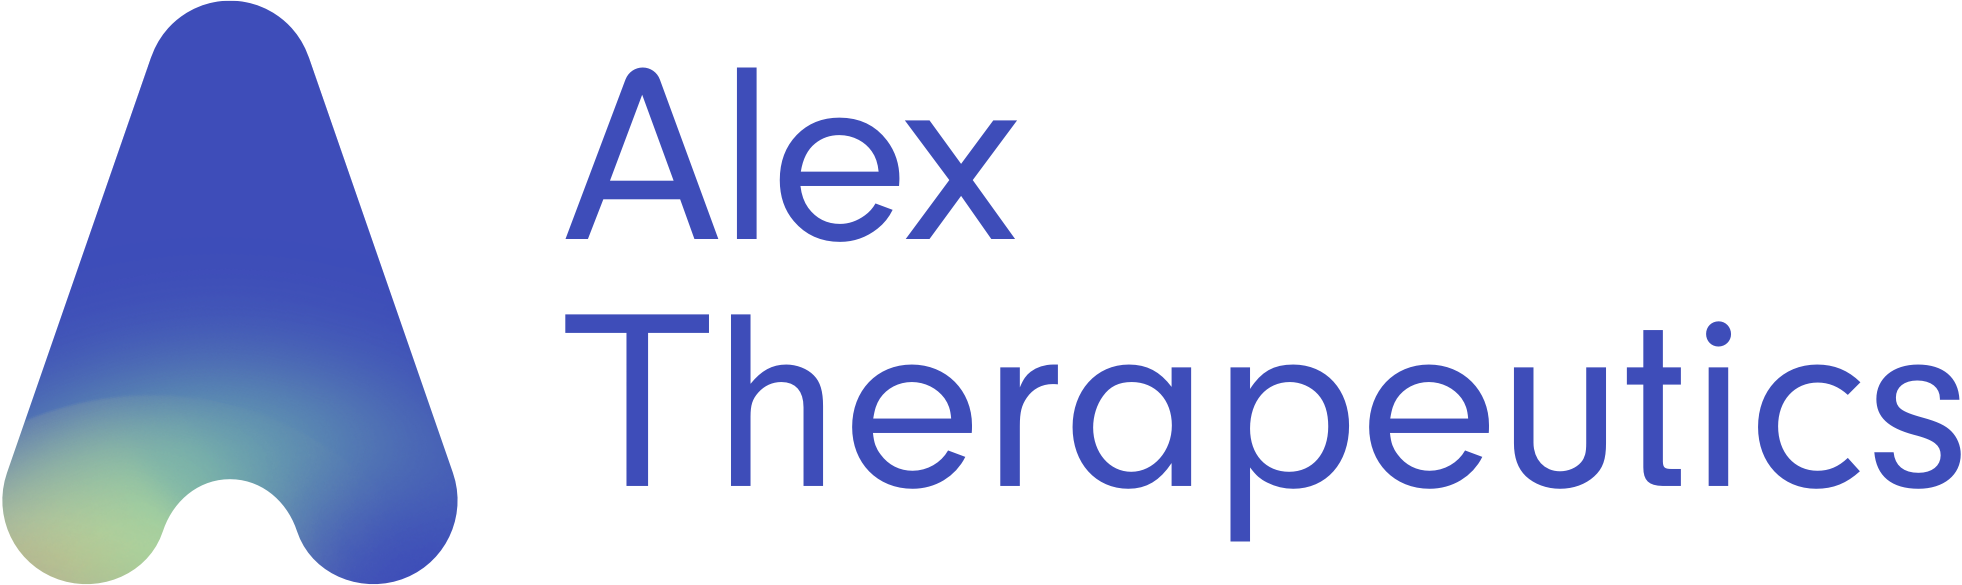 Alex Therapeutics